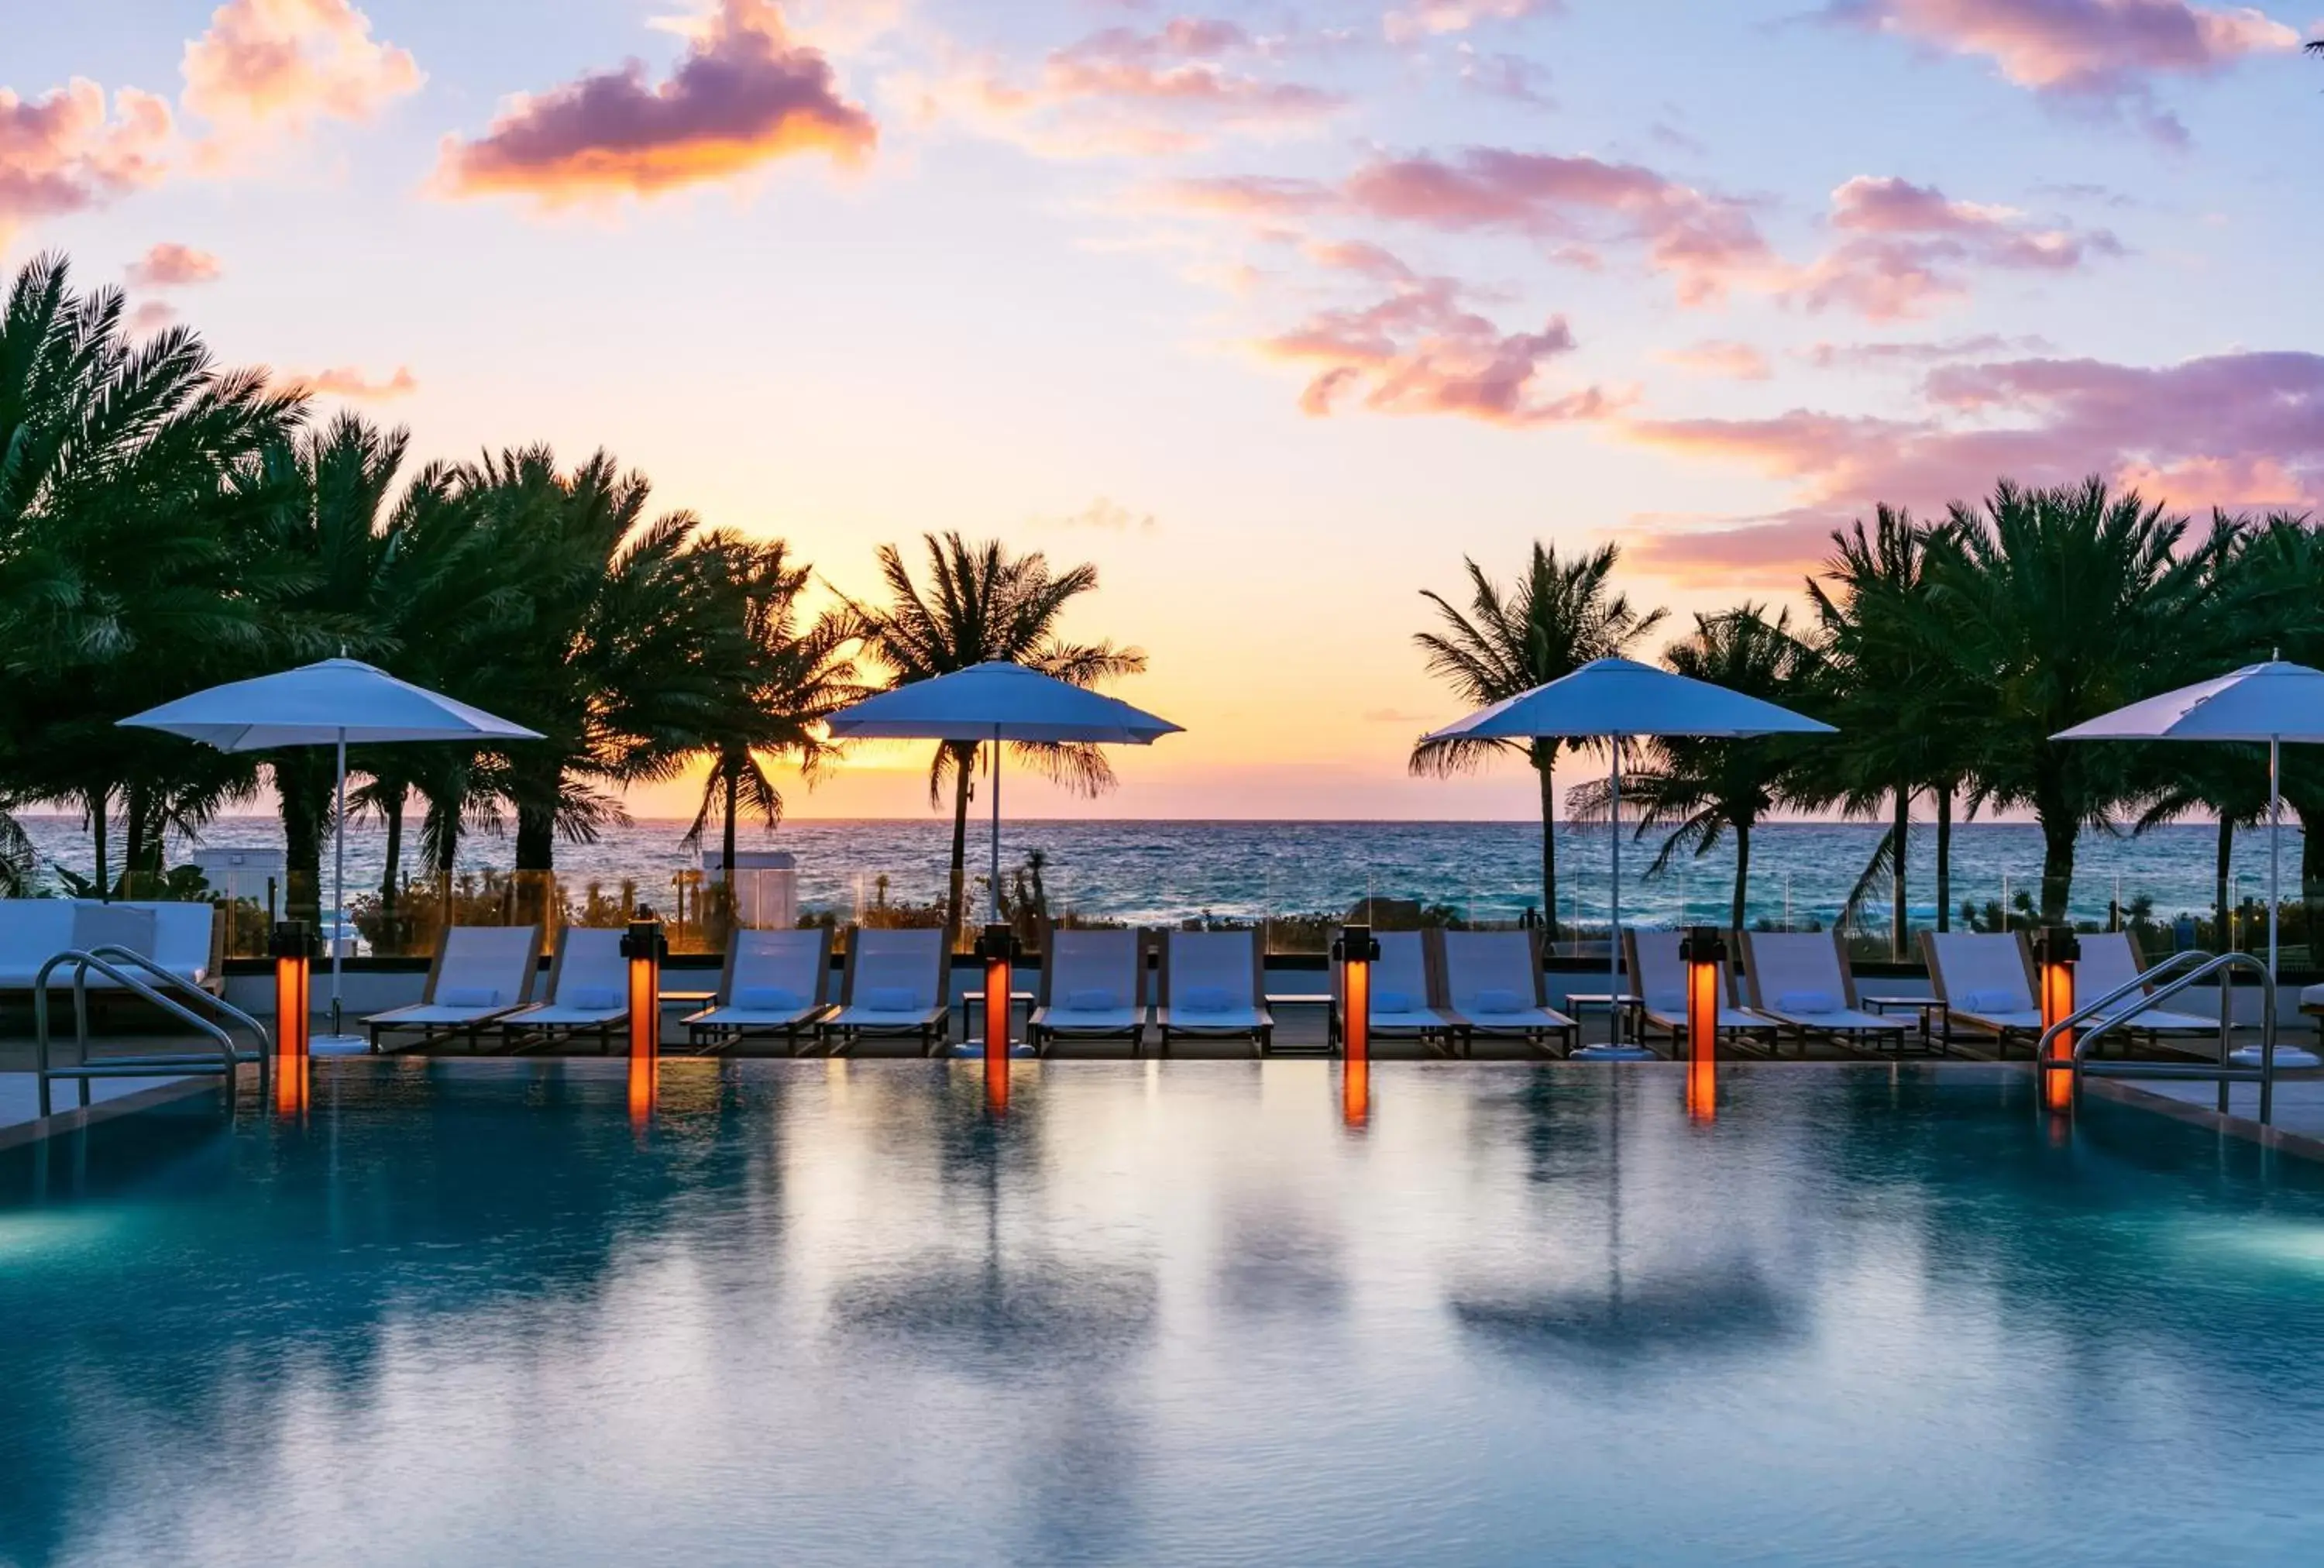 Swimming pool, Sunrise/Sunset in Eden Roc Miami Beach